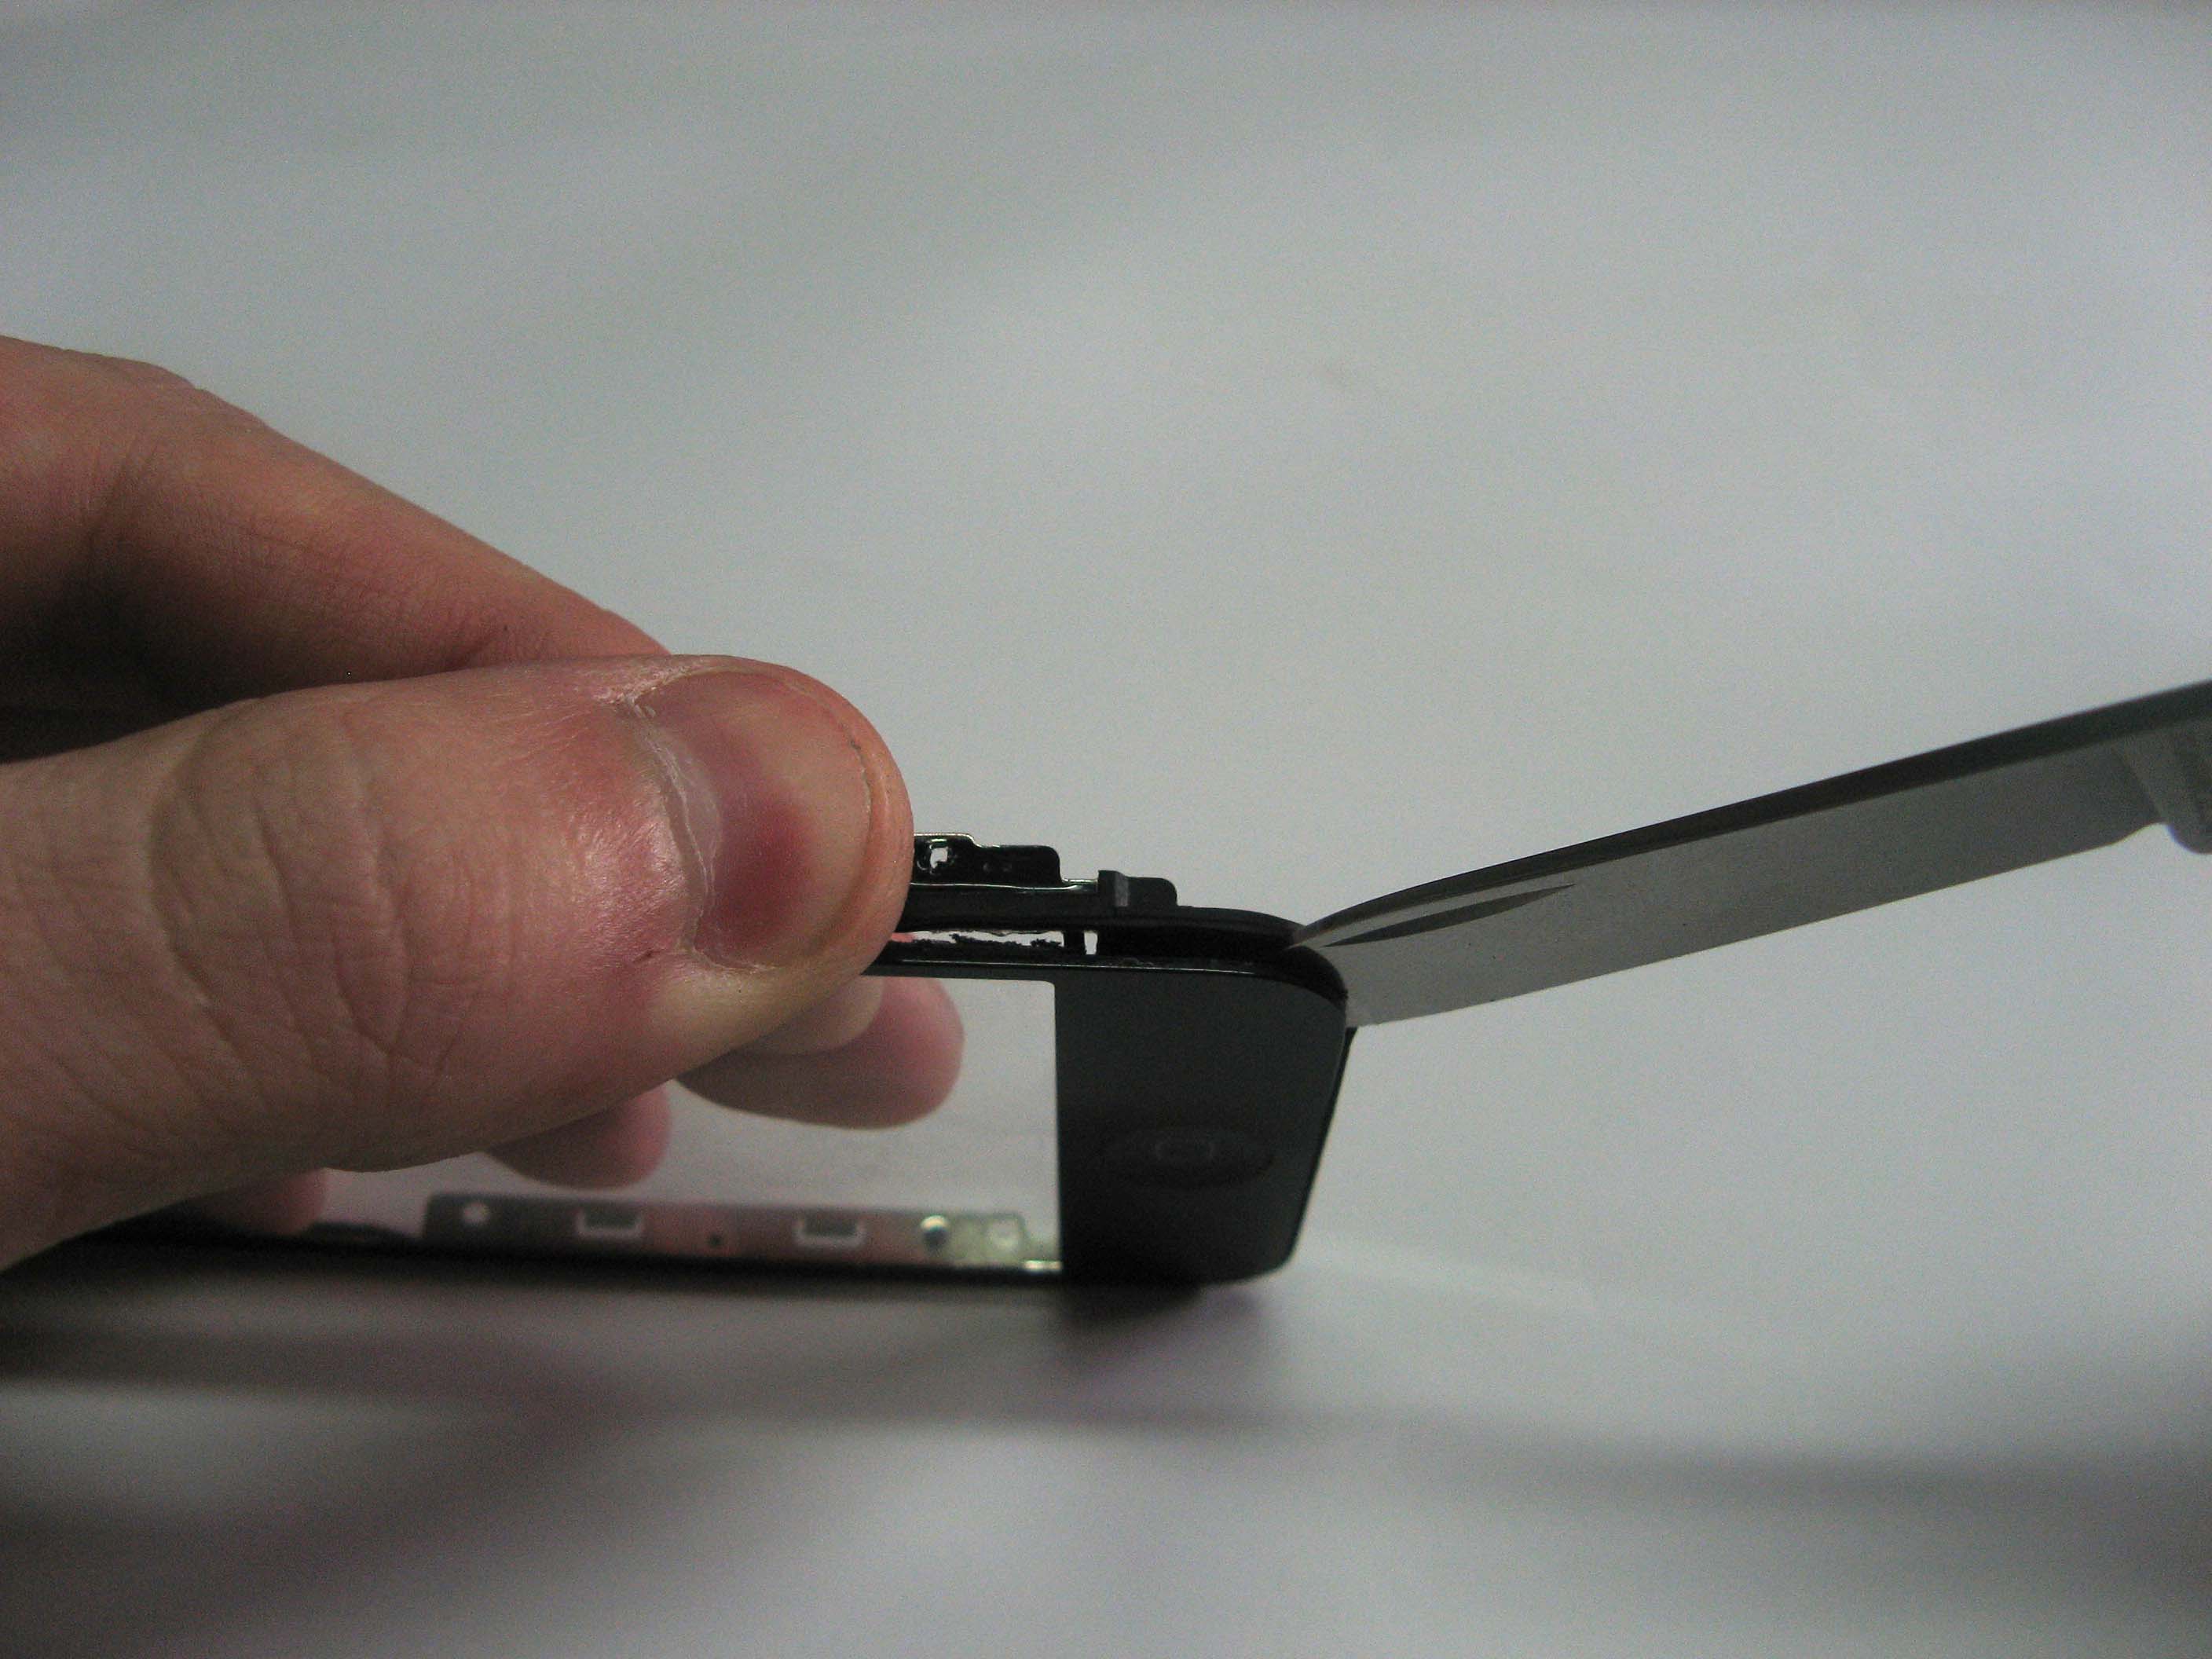 Вставили ножик в образовавшуюся щель на iPhone 3G